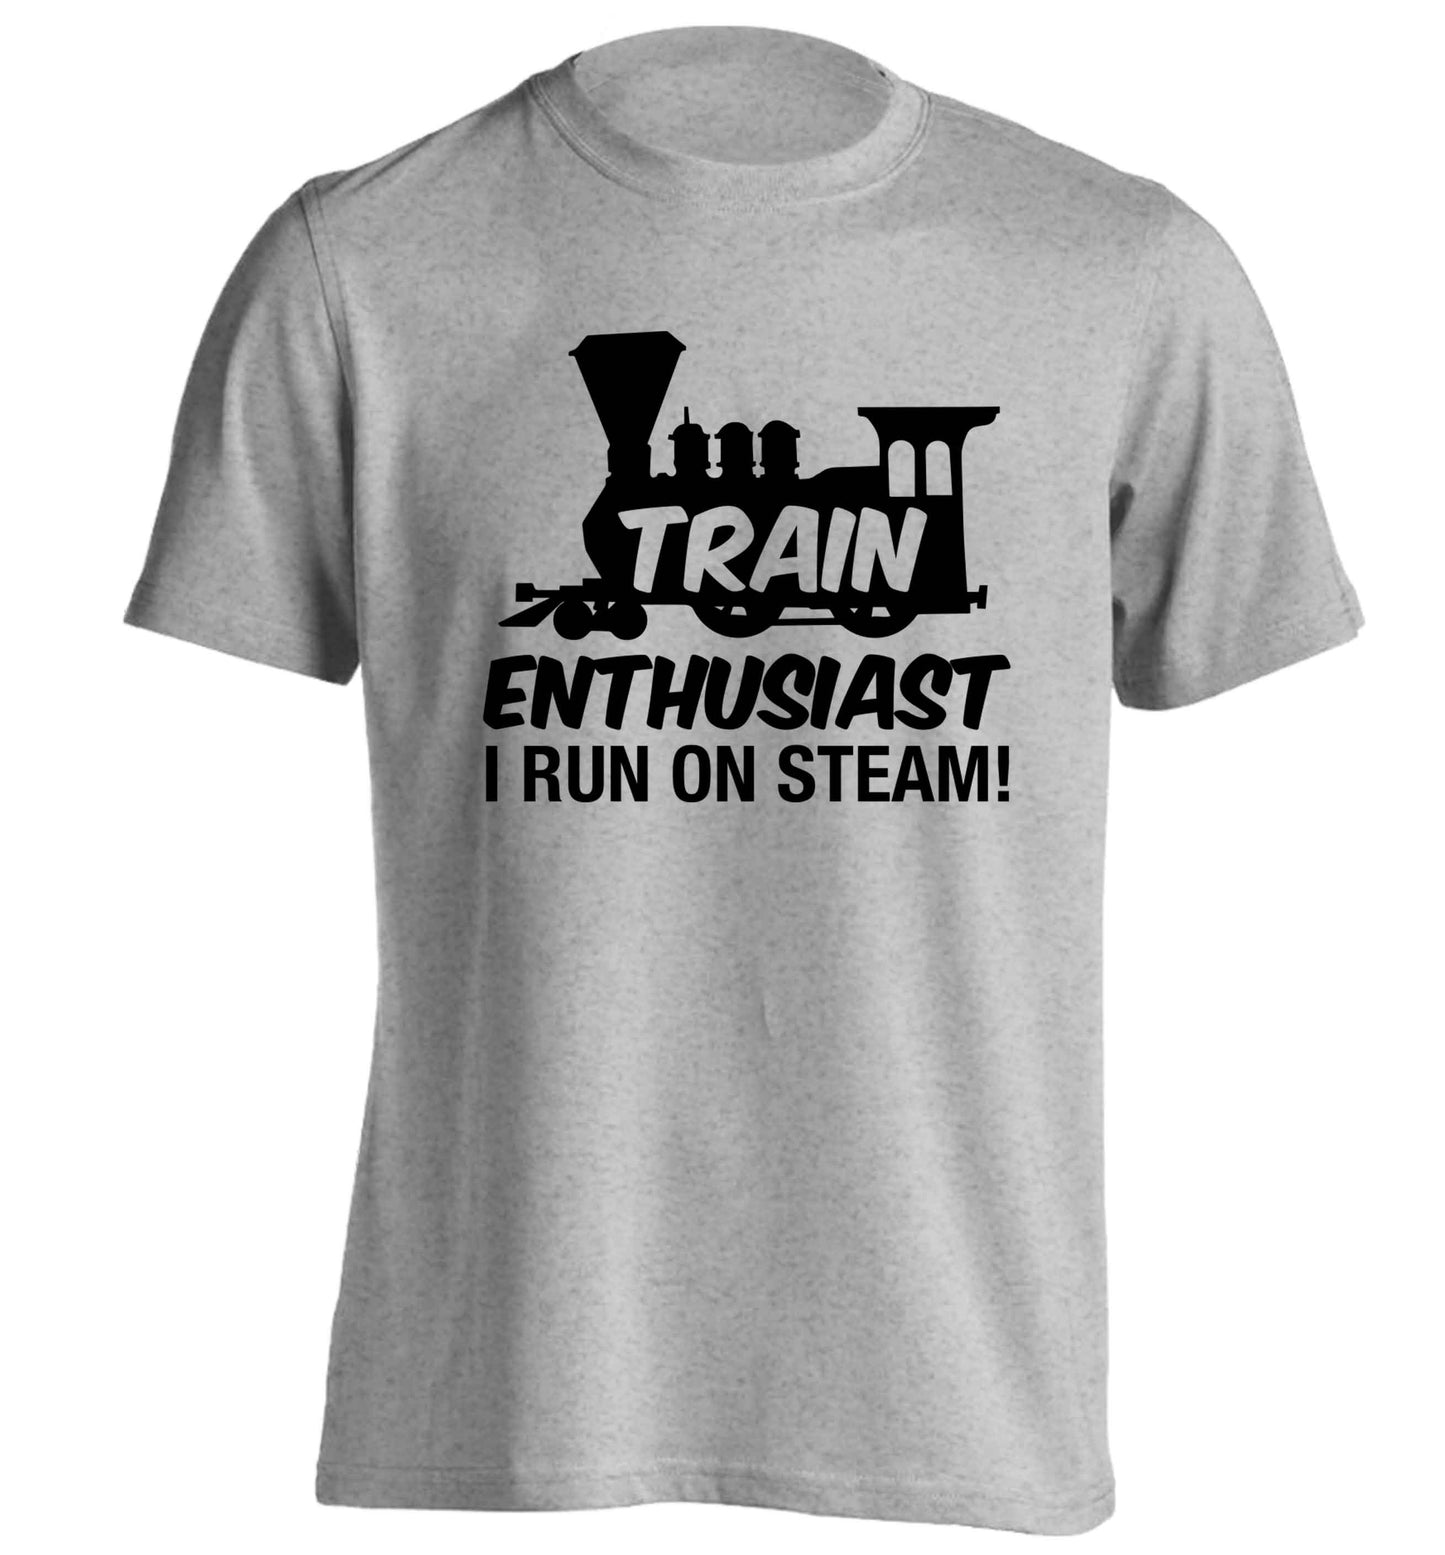 Train enthusiast I run on steam adults unisex grey Tshirt 2XL